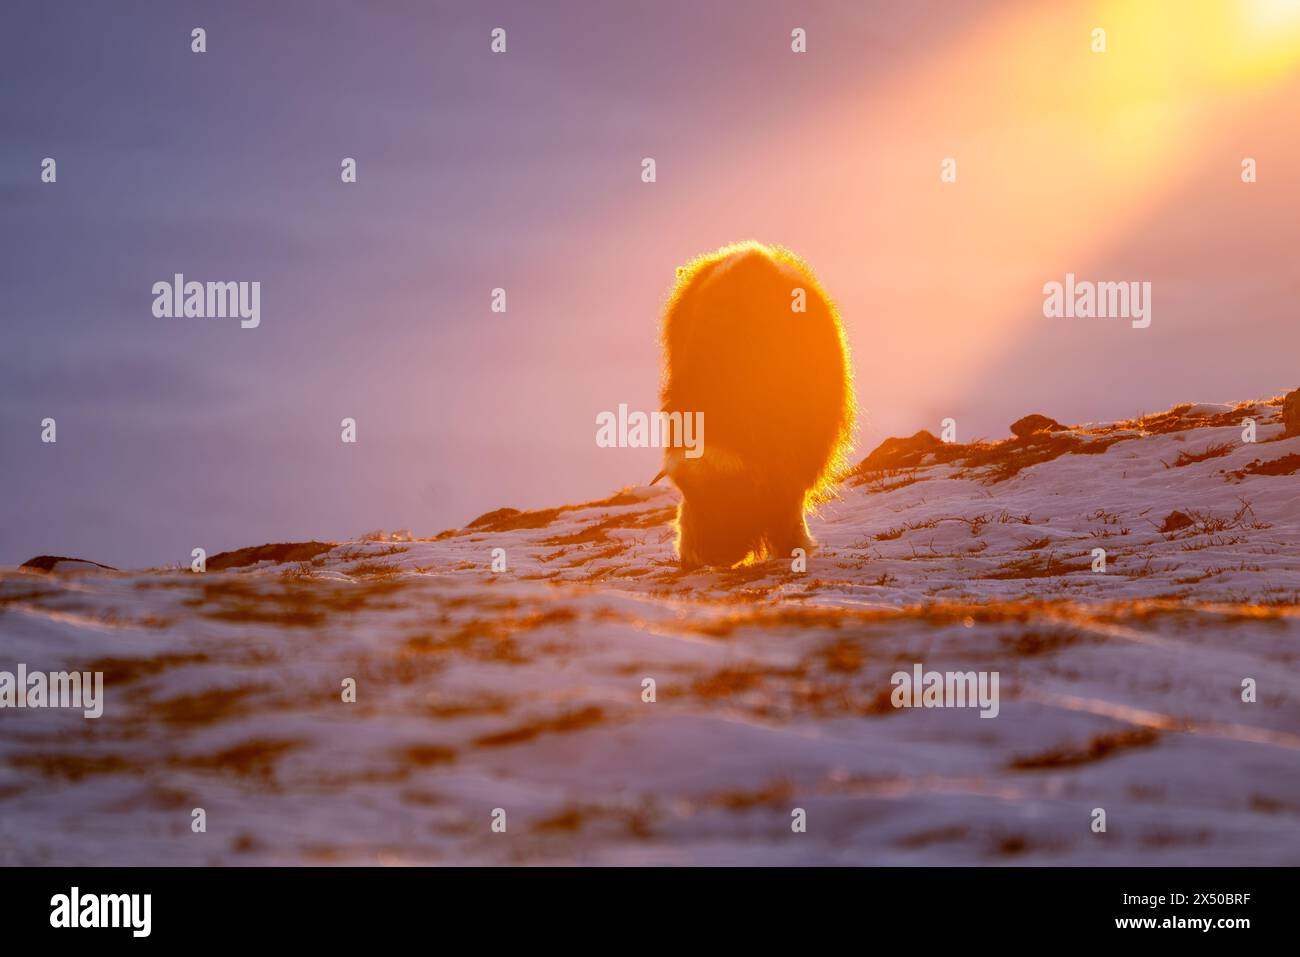 Bellissimo ritratto di un bue muschiato nella neve in cerca di qualcosa da mangiare tra pietre, cespugli e muschio con un bellissimo tramonto in una landsca innevata Foto Stock